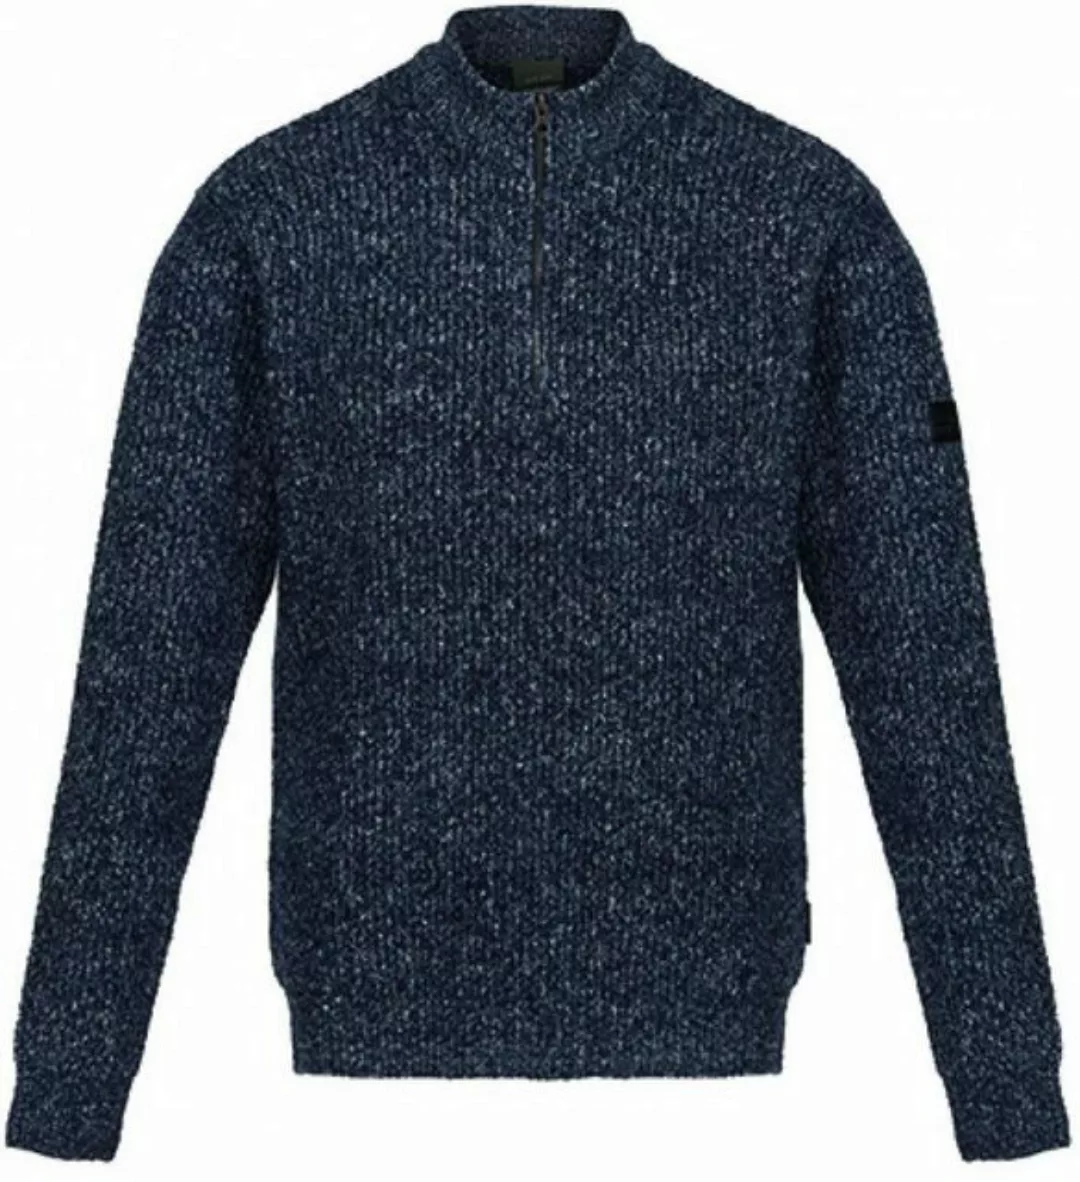 Regatta Professional Sweatshirt Solomon Zip-Neck Knitted Pullover S bis 3XL günstig online kaufen